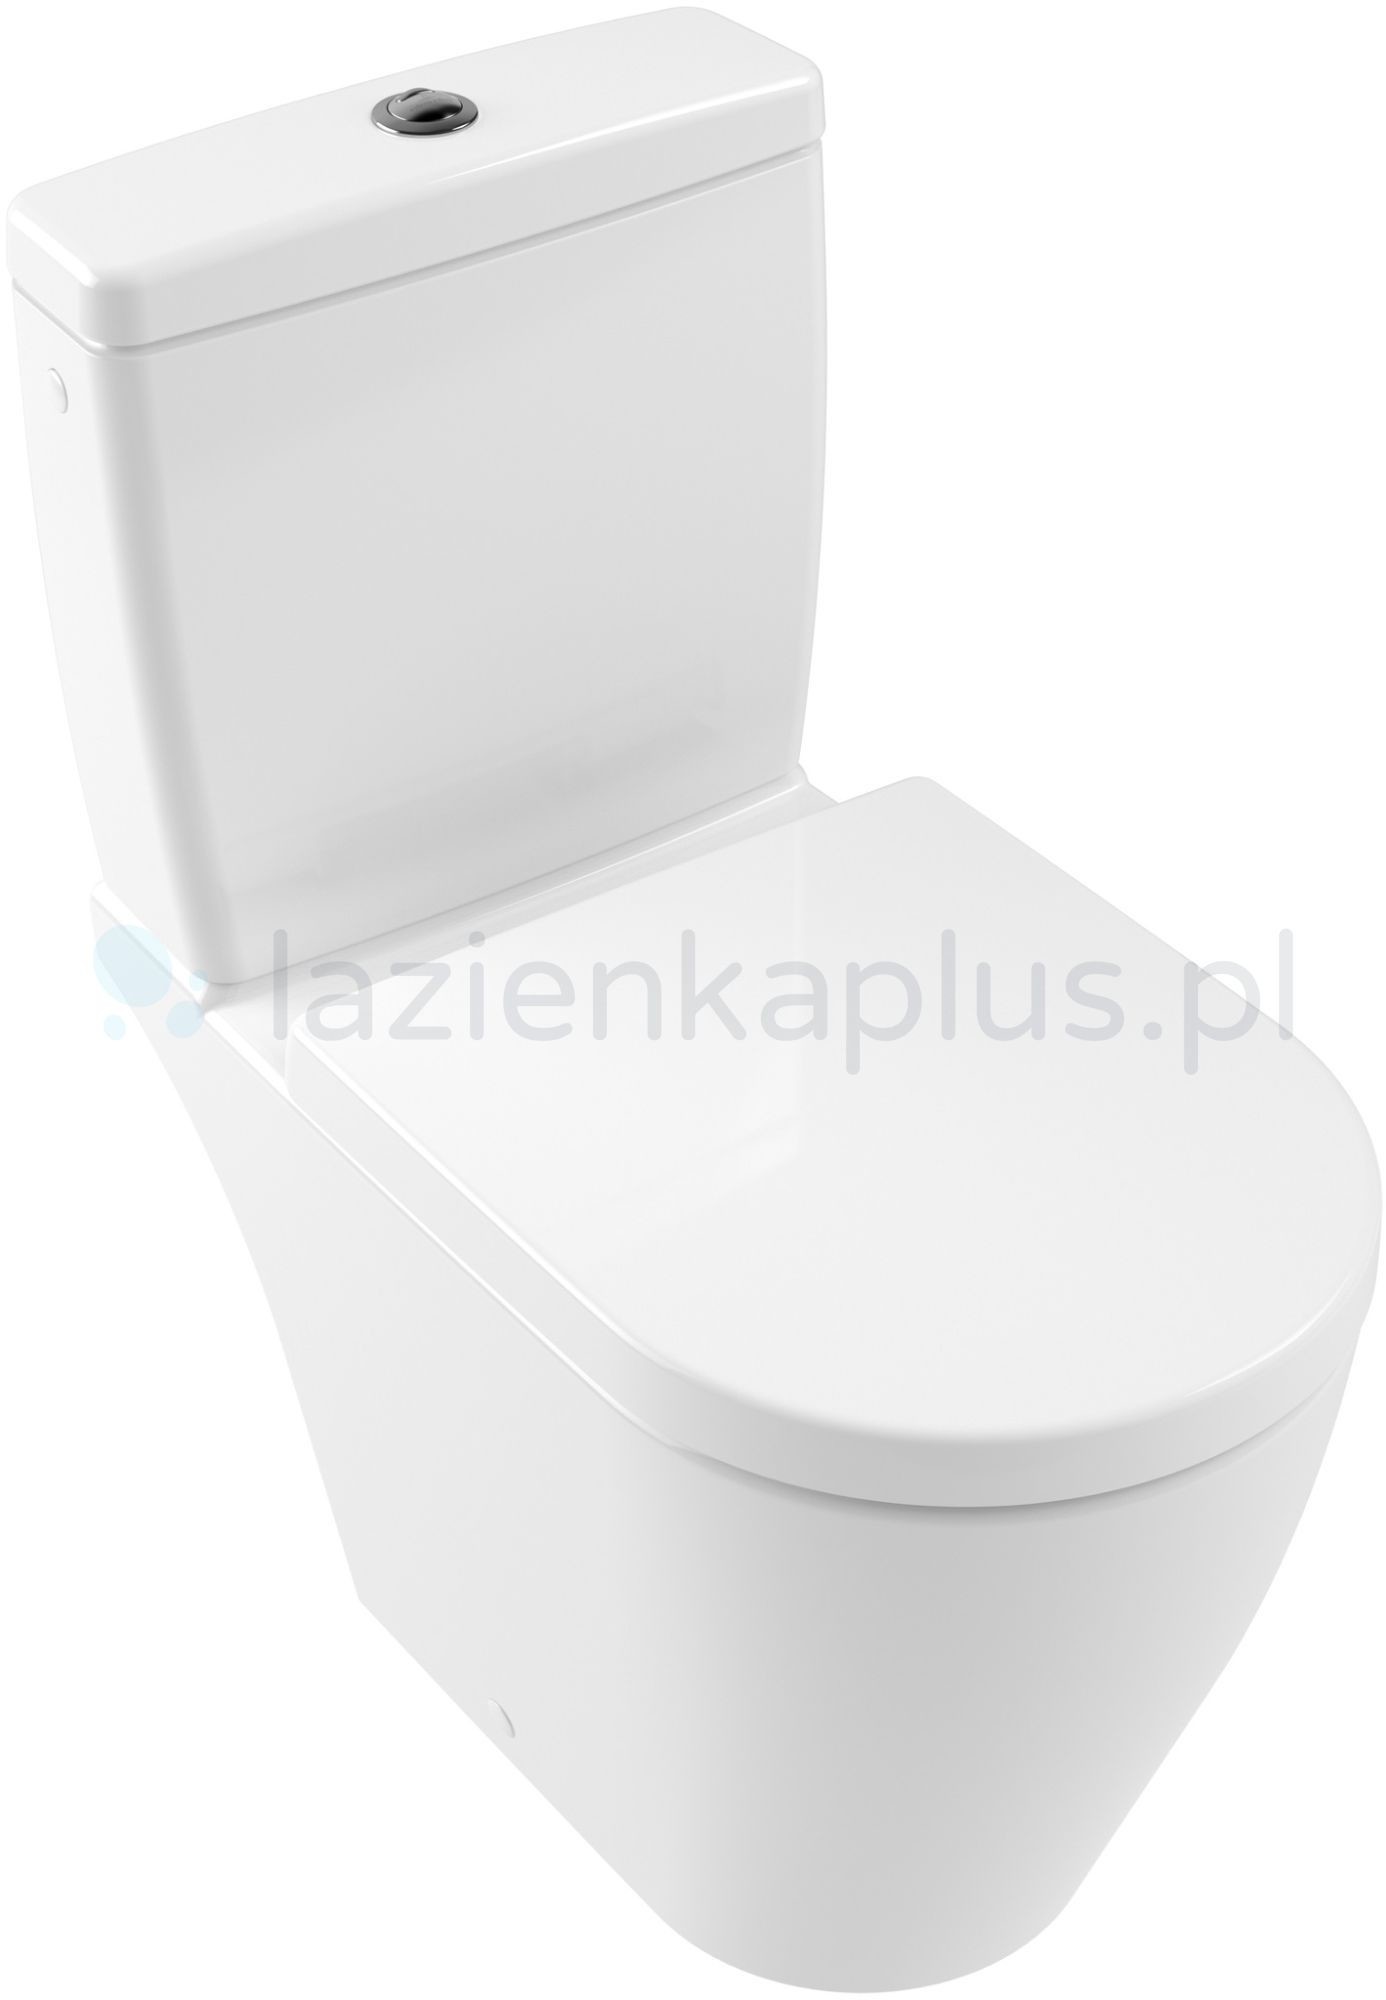 Villeroy & Boch Avento miska kompakt wc Biały 5644R001